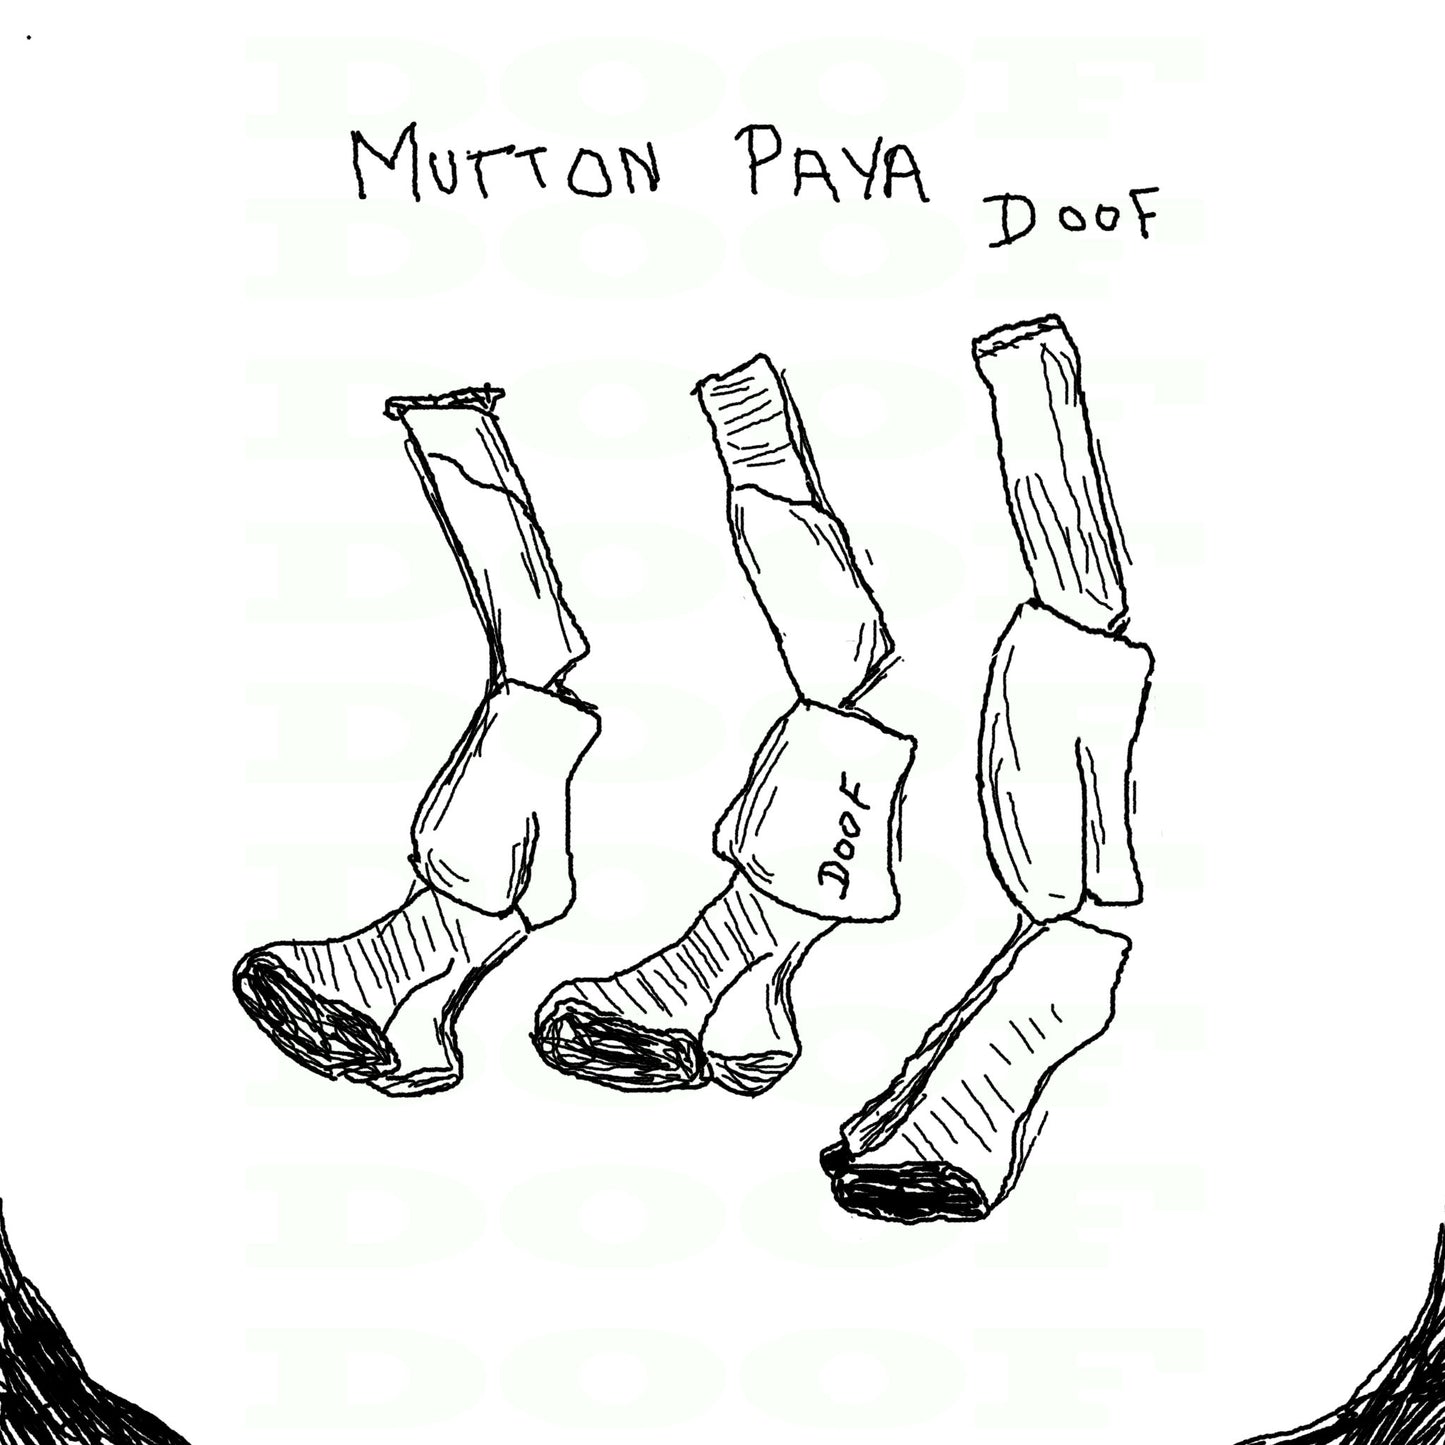 Mutton paya Doof sketch